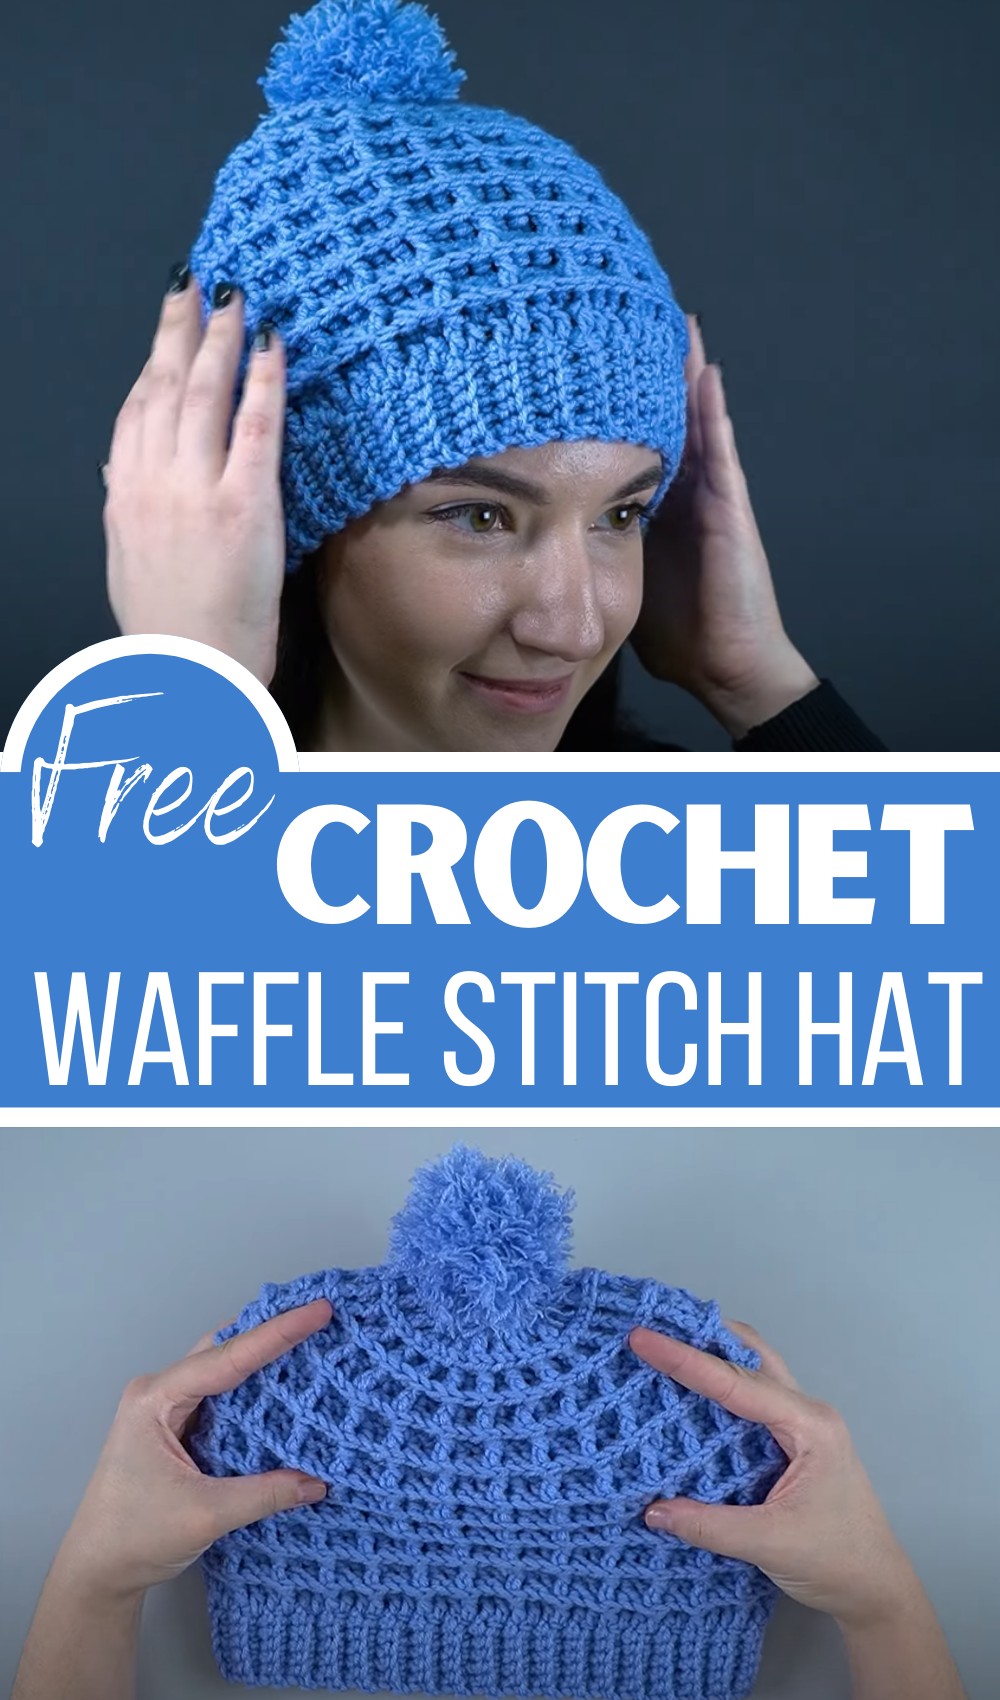 Waffle Stitch Crochet Hat